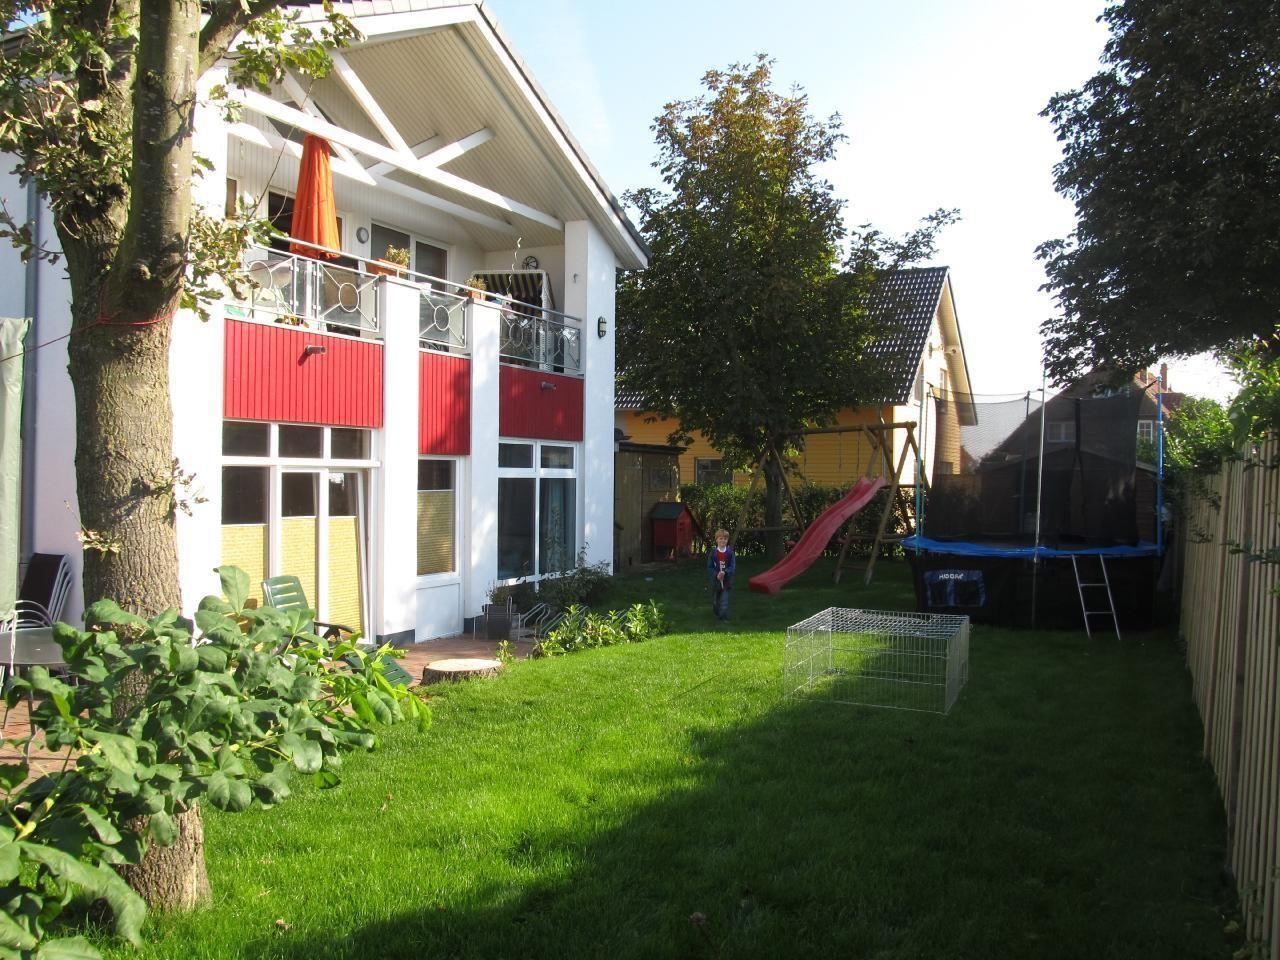 Appartement in Wulfen mit Garten, Grill und Terras  in Deutschland